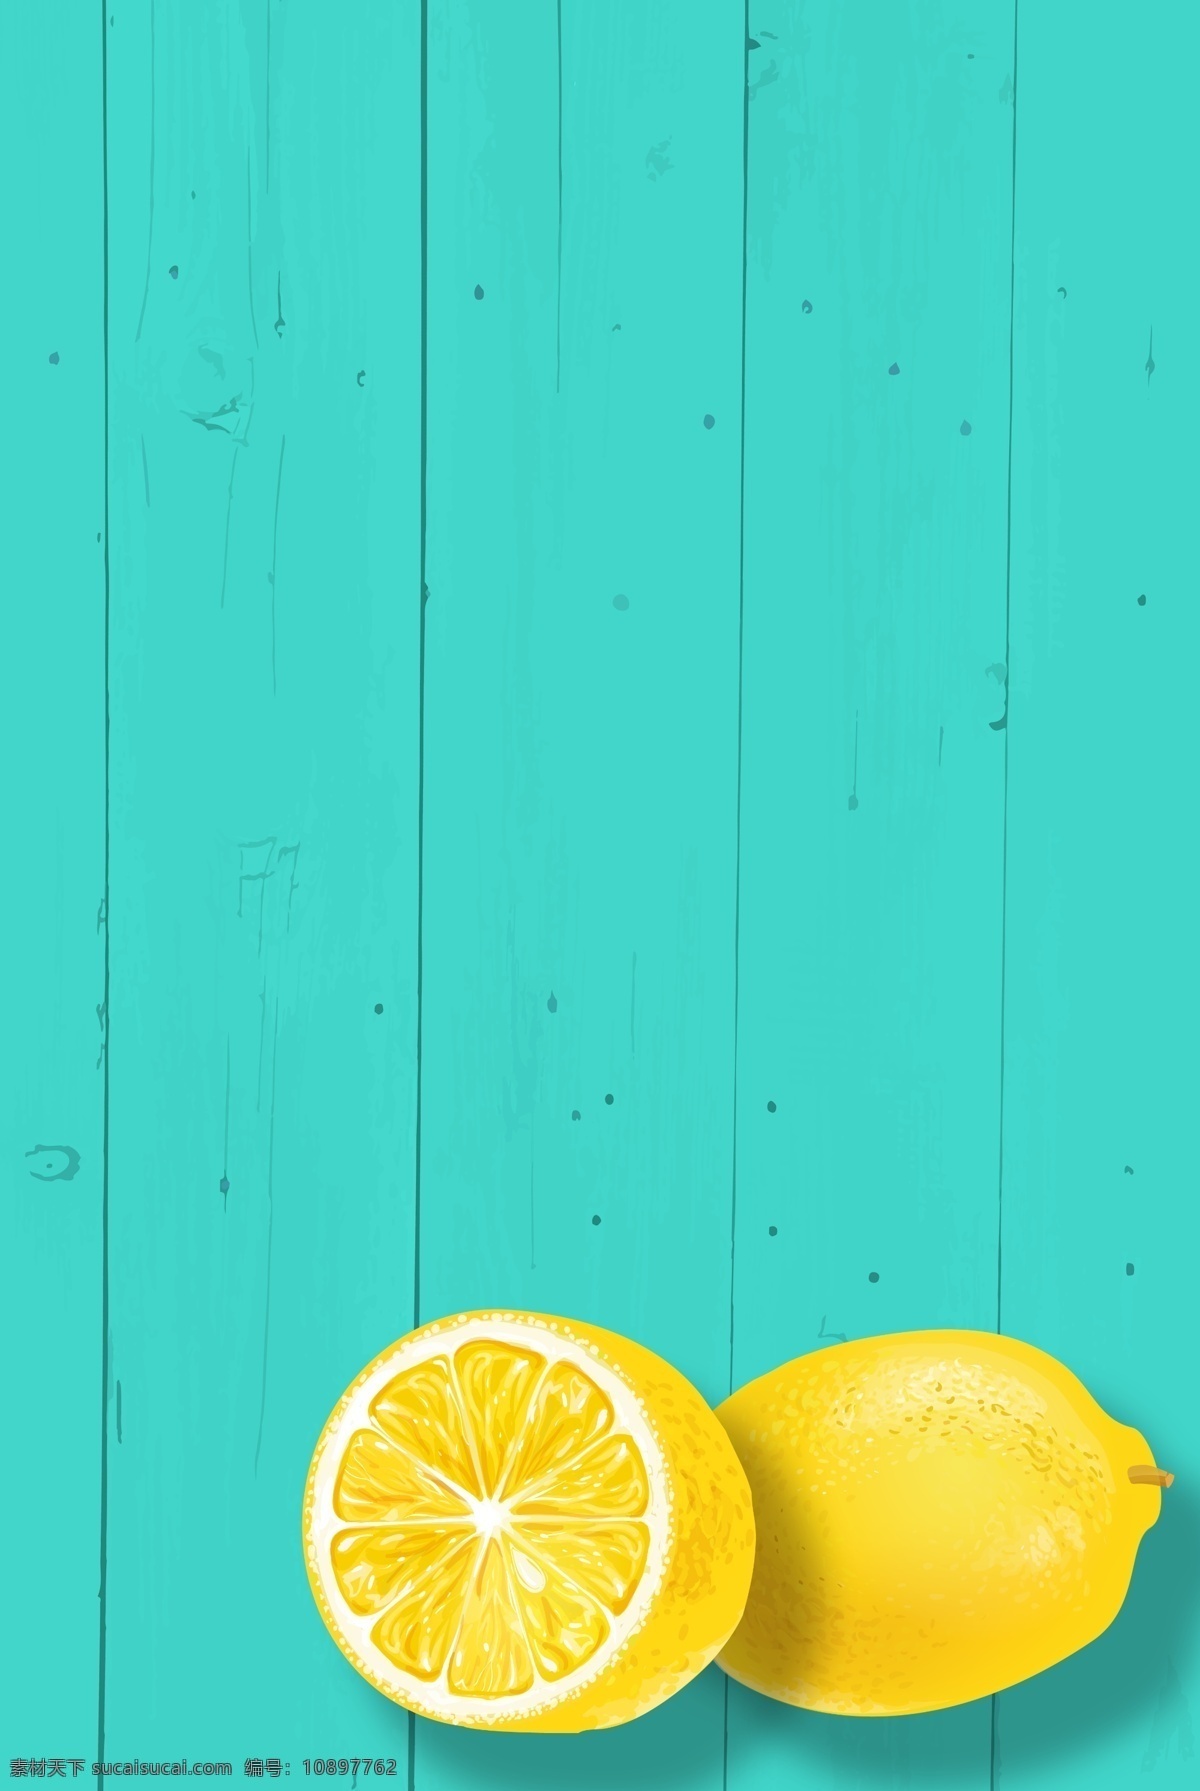 简约 绿色 木板 柠檬 装饰 海报 背景 黄 手绘 蓝绿色 点缀 小清新